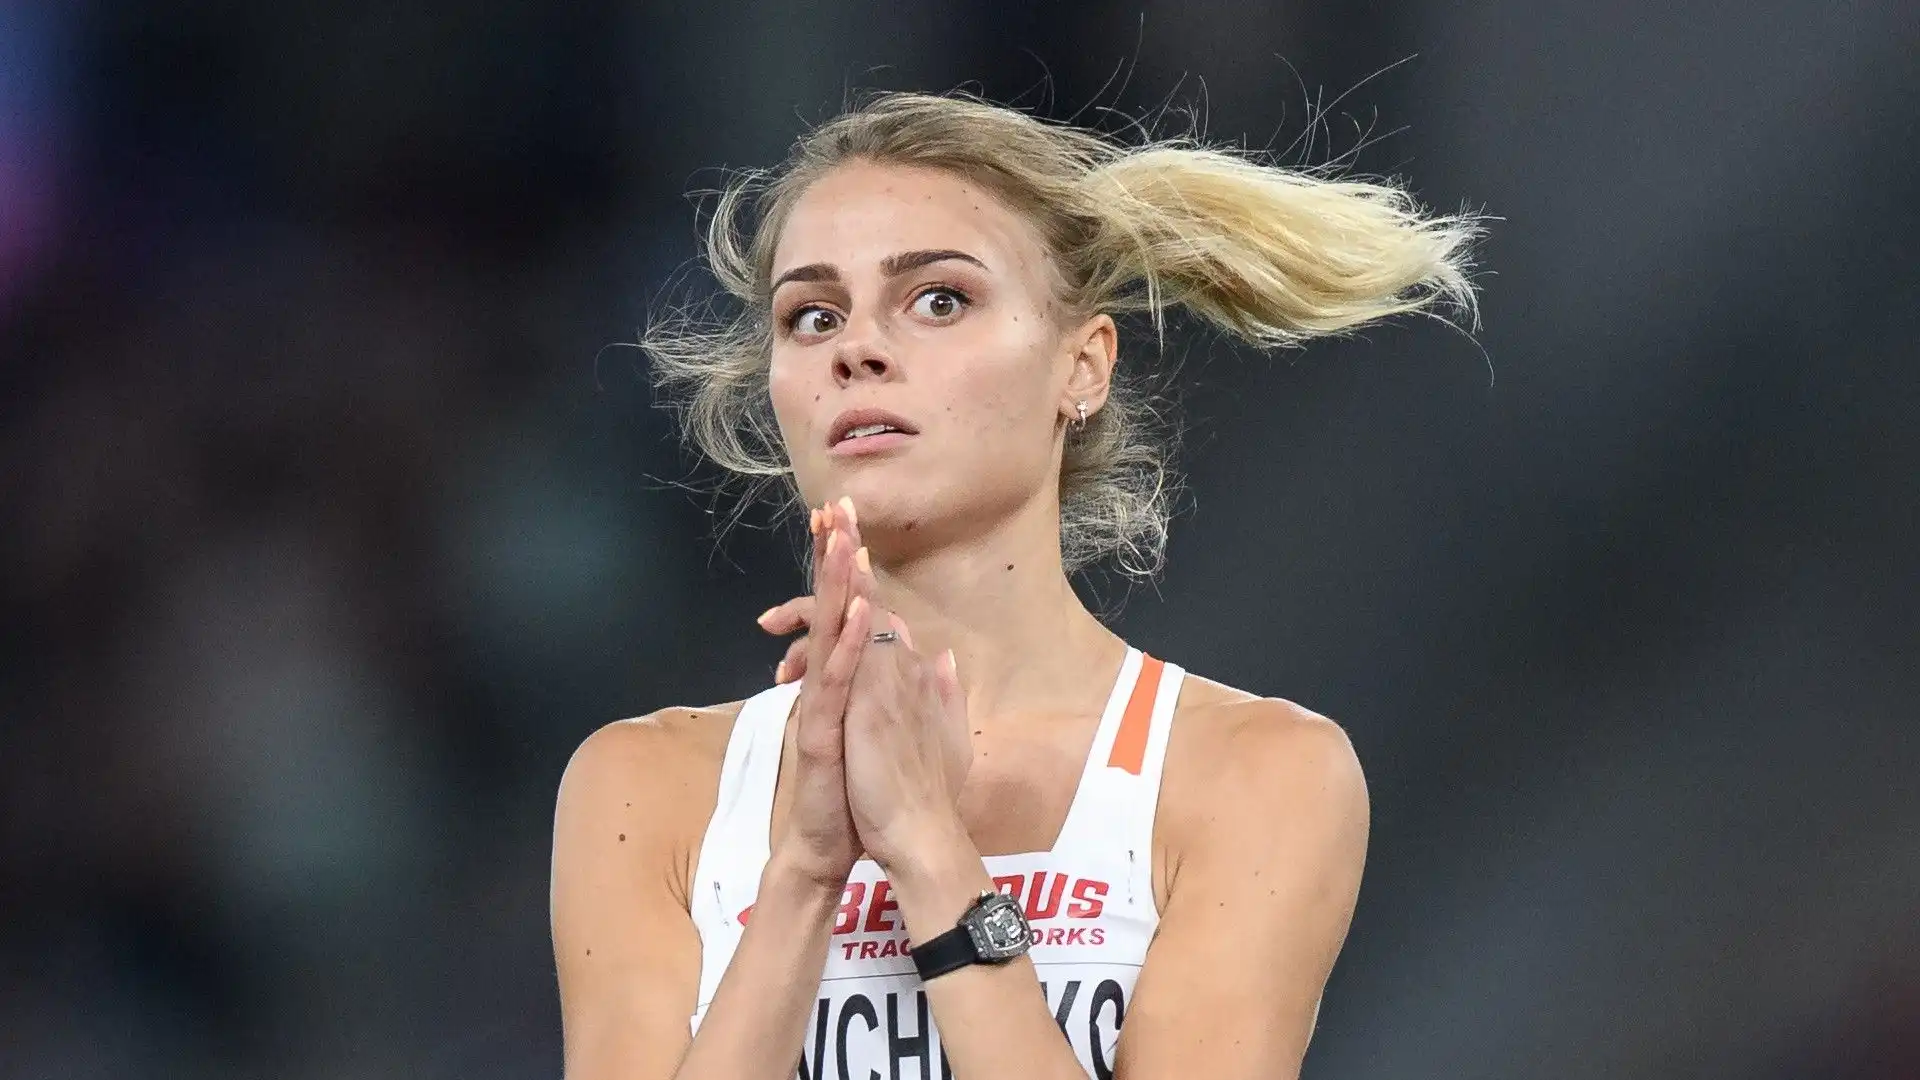 Ai mondiali di atletica di Londra 2017 la Levchenko ha vinto la medaglia d'argento